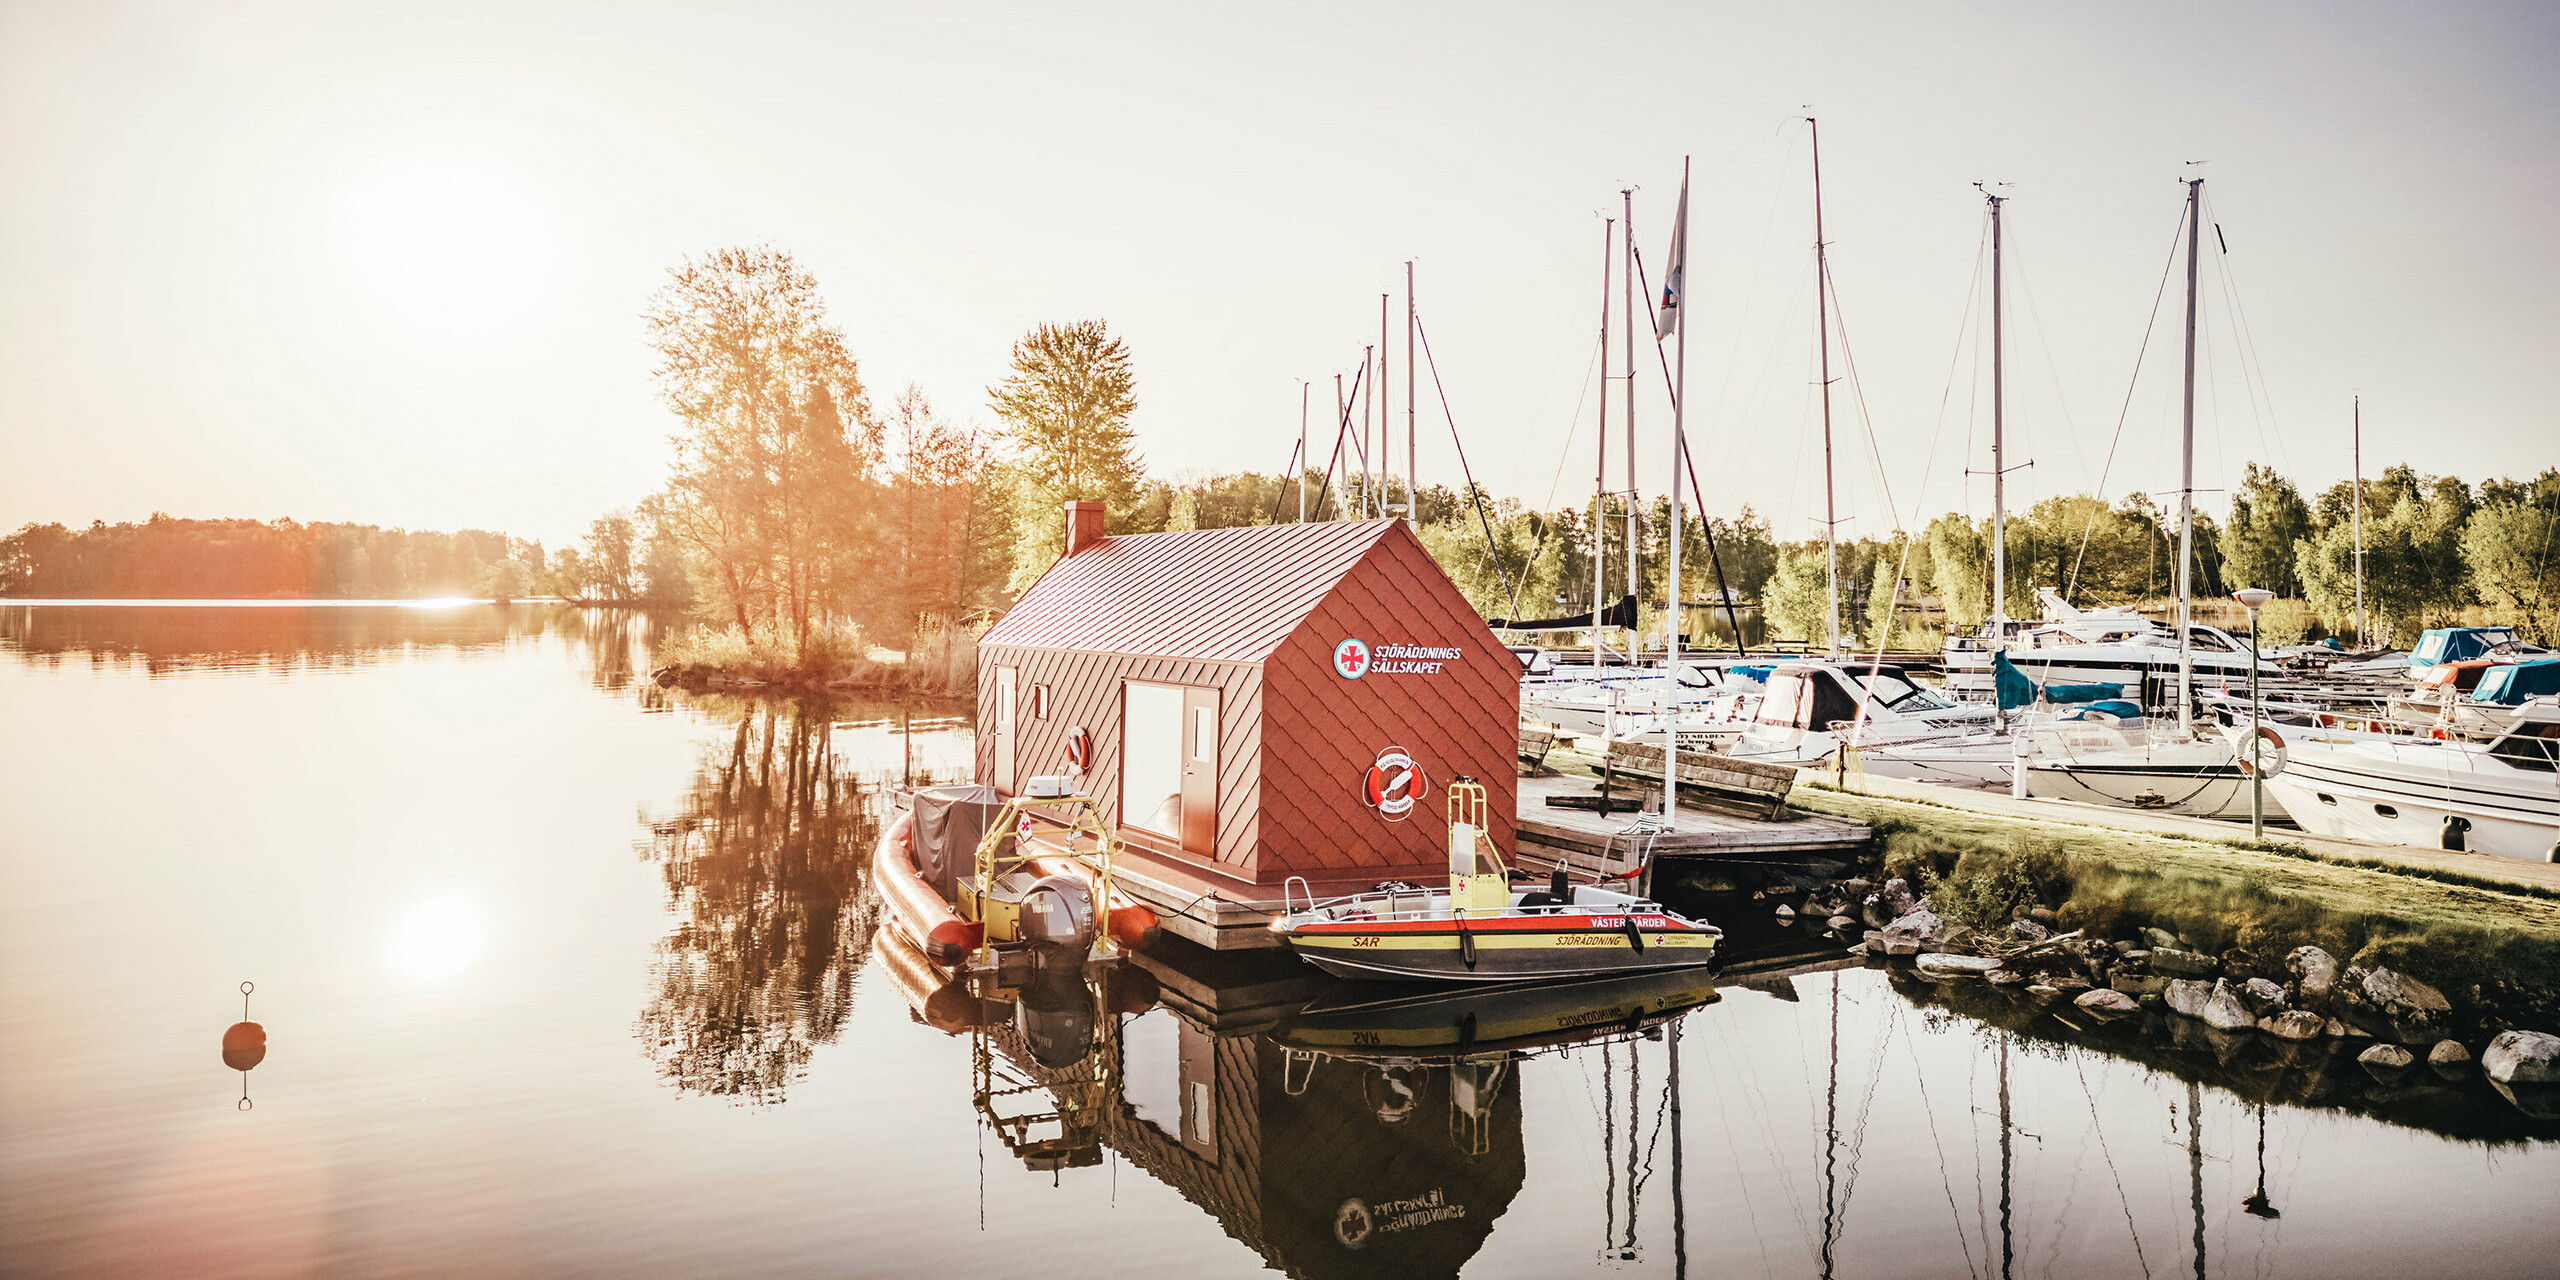 Frühe Morgenstunden am Hjälmaren See in Schweden, wo das schwimmende Seenotrettungsstationshaus mit einer oxydroten Aluminiumhülle aus PREFA Dach- und Wandrauten 29×29 ruhig auf dem Wasser liegt. Die aufgehende Sonne hinter dem Gebäude taucht die Szene in ein sanftes Licht, das sich zusammen mit dem Stationshaus und den Rettungsbooten im stillen Wasser spiegelt. Im Hintergrund reihen sich die Masten der im Hafen vertäuten Segelboote auf und vervollständigen das Bild eines friedlichen Rückzugsortes, der zugleich ein lebensrettender Stützpunkt ist.